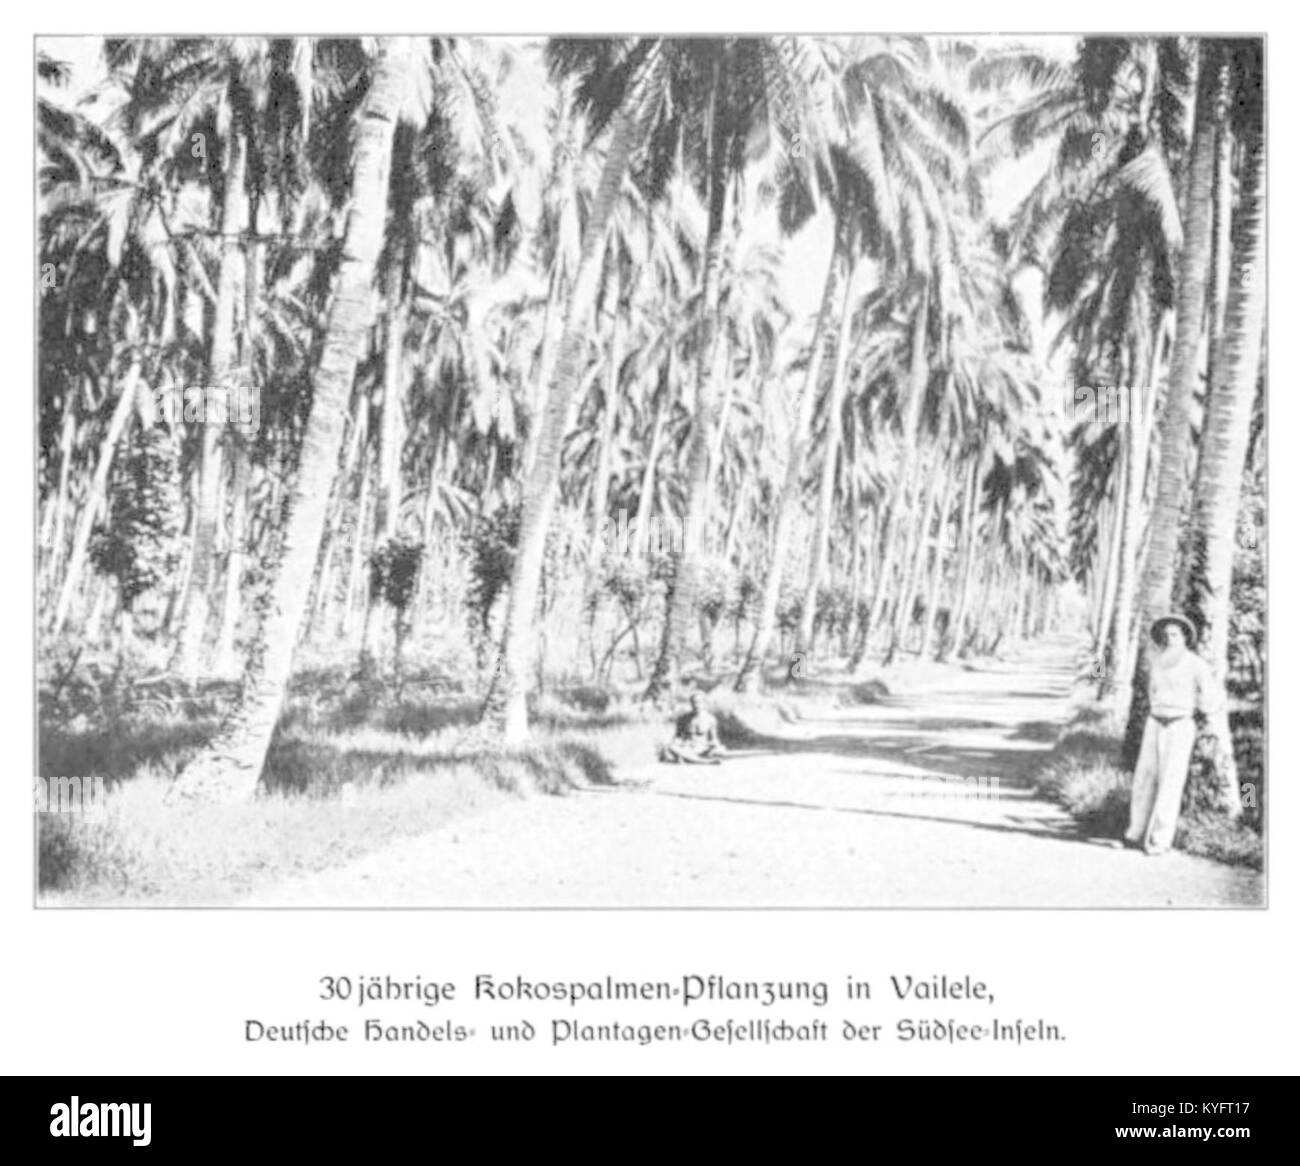 WOHLTMANN(1904) P102 - 30-jährige dans Kokospalmen-Pflanzung Vailele, Deutsche Handels- und der Südsee-Inseln Plantagengesellschaft Banque D'Images